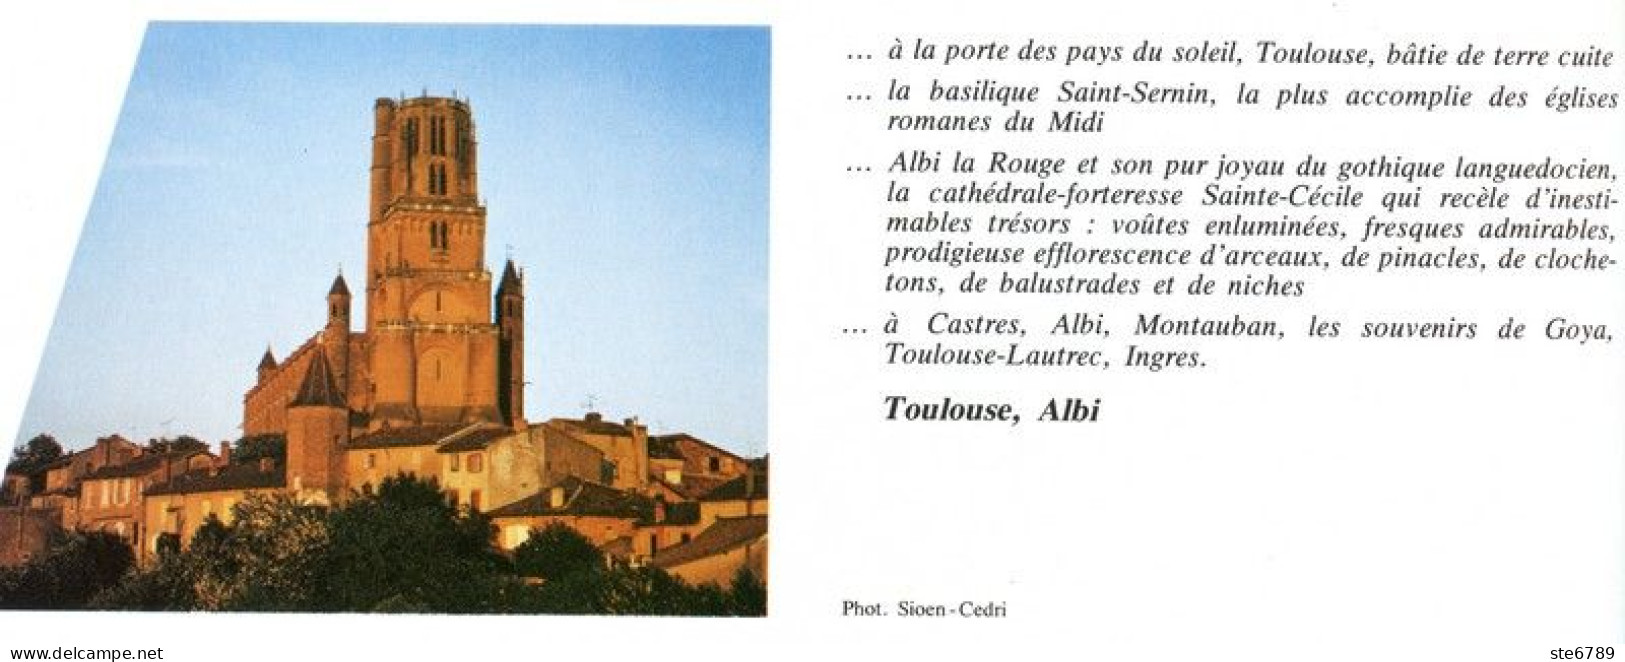 TOULOUSE ET ALBI  Revue Photos 1981 BEAUTES DE LA FRANCE N° 82 - Geography